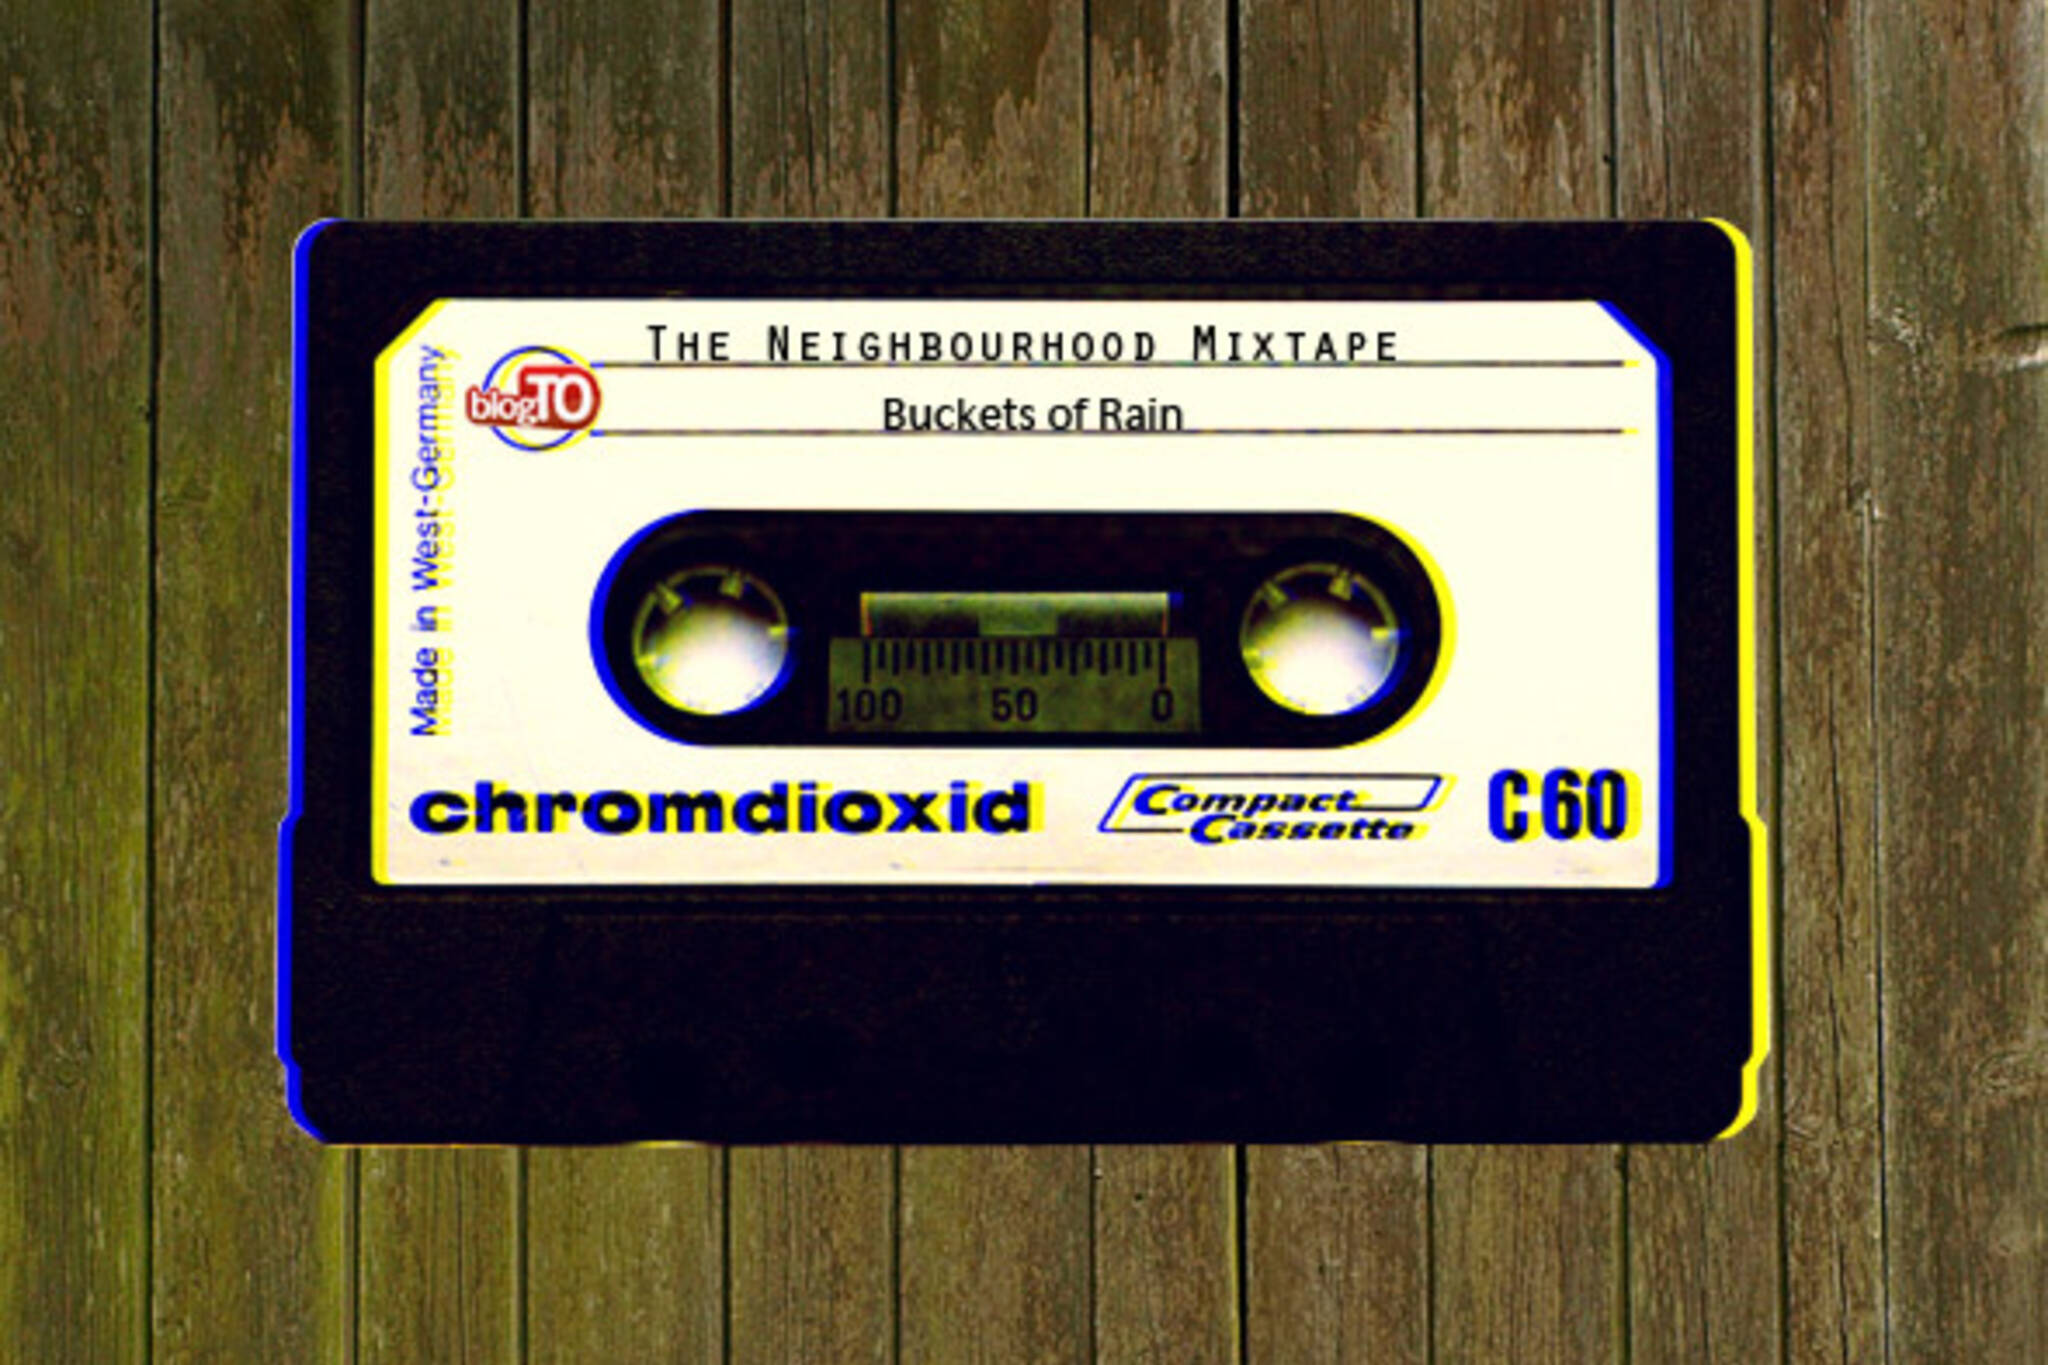 The Neighbourhood Mixtape